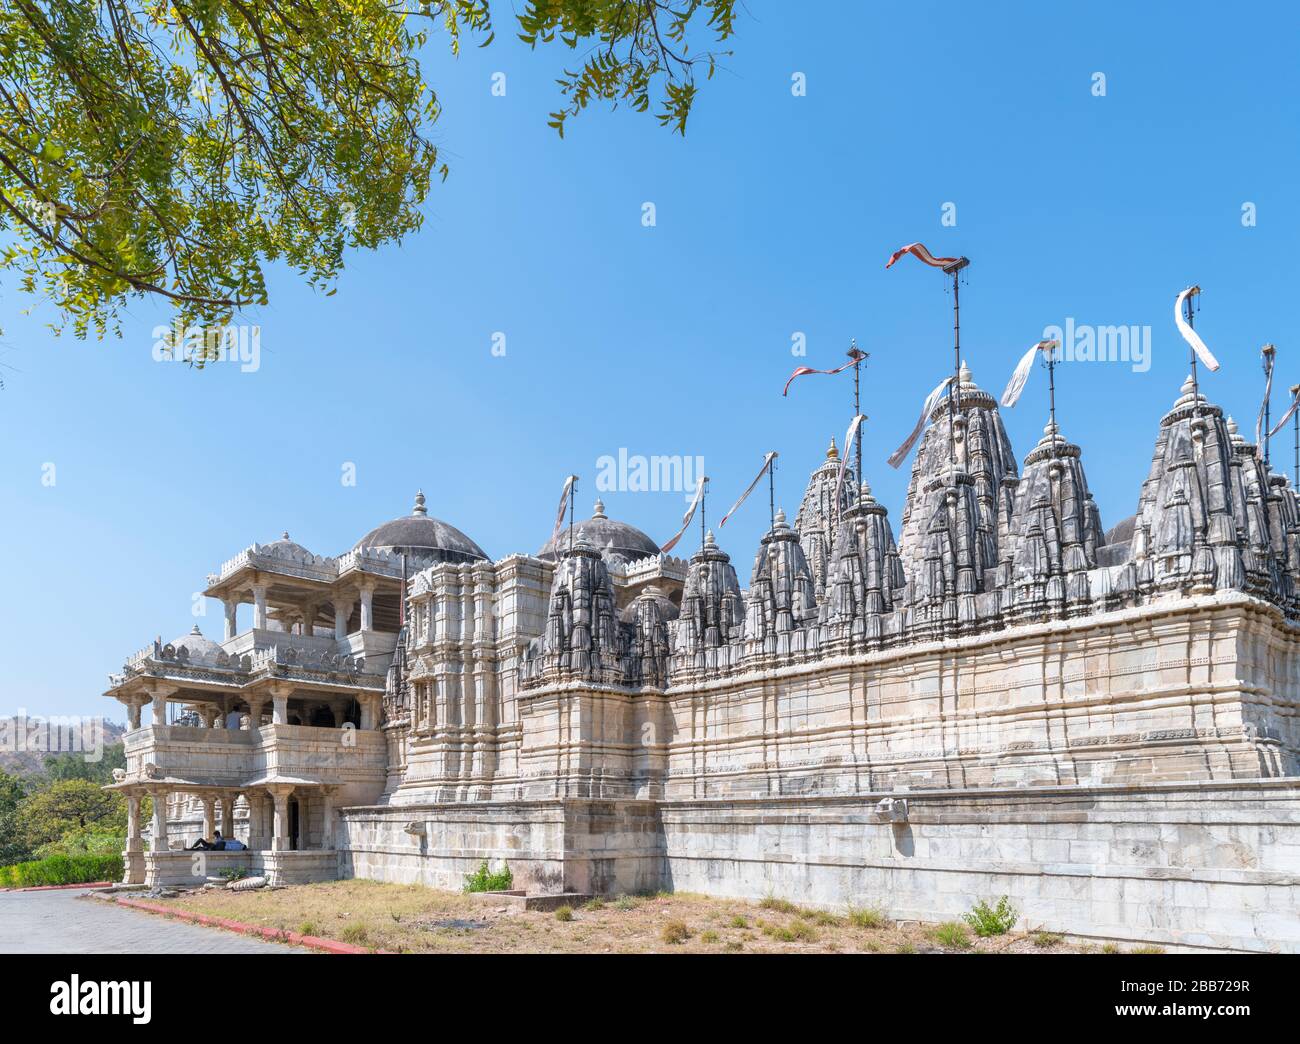 El templo de Ranakpur Jain del siglo XV (Chaumukha Mandir), Ranakpur, Rajasthan, India Foto de stock